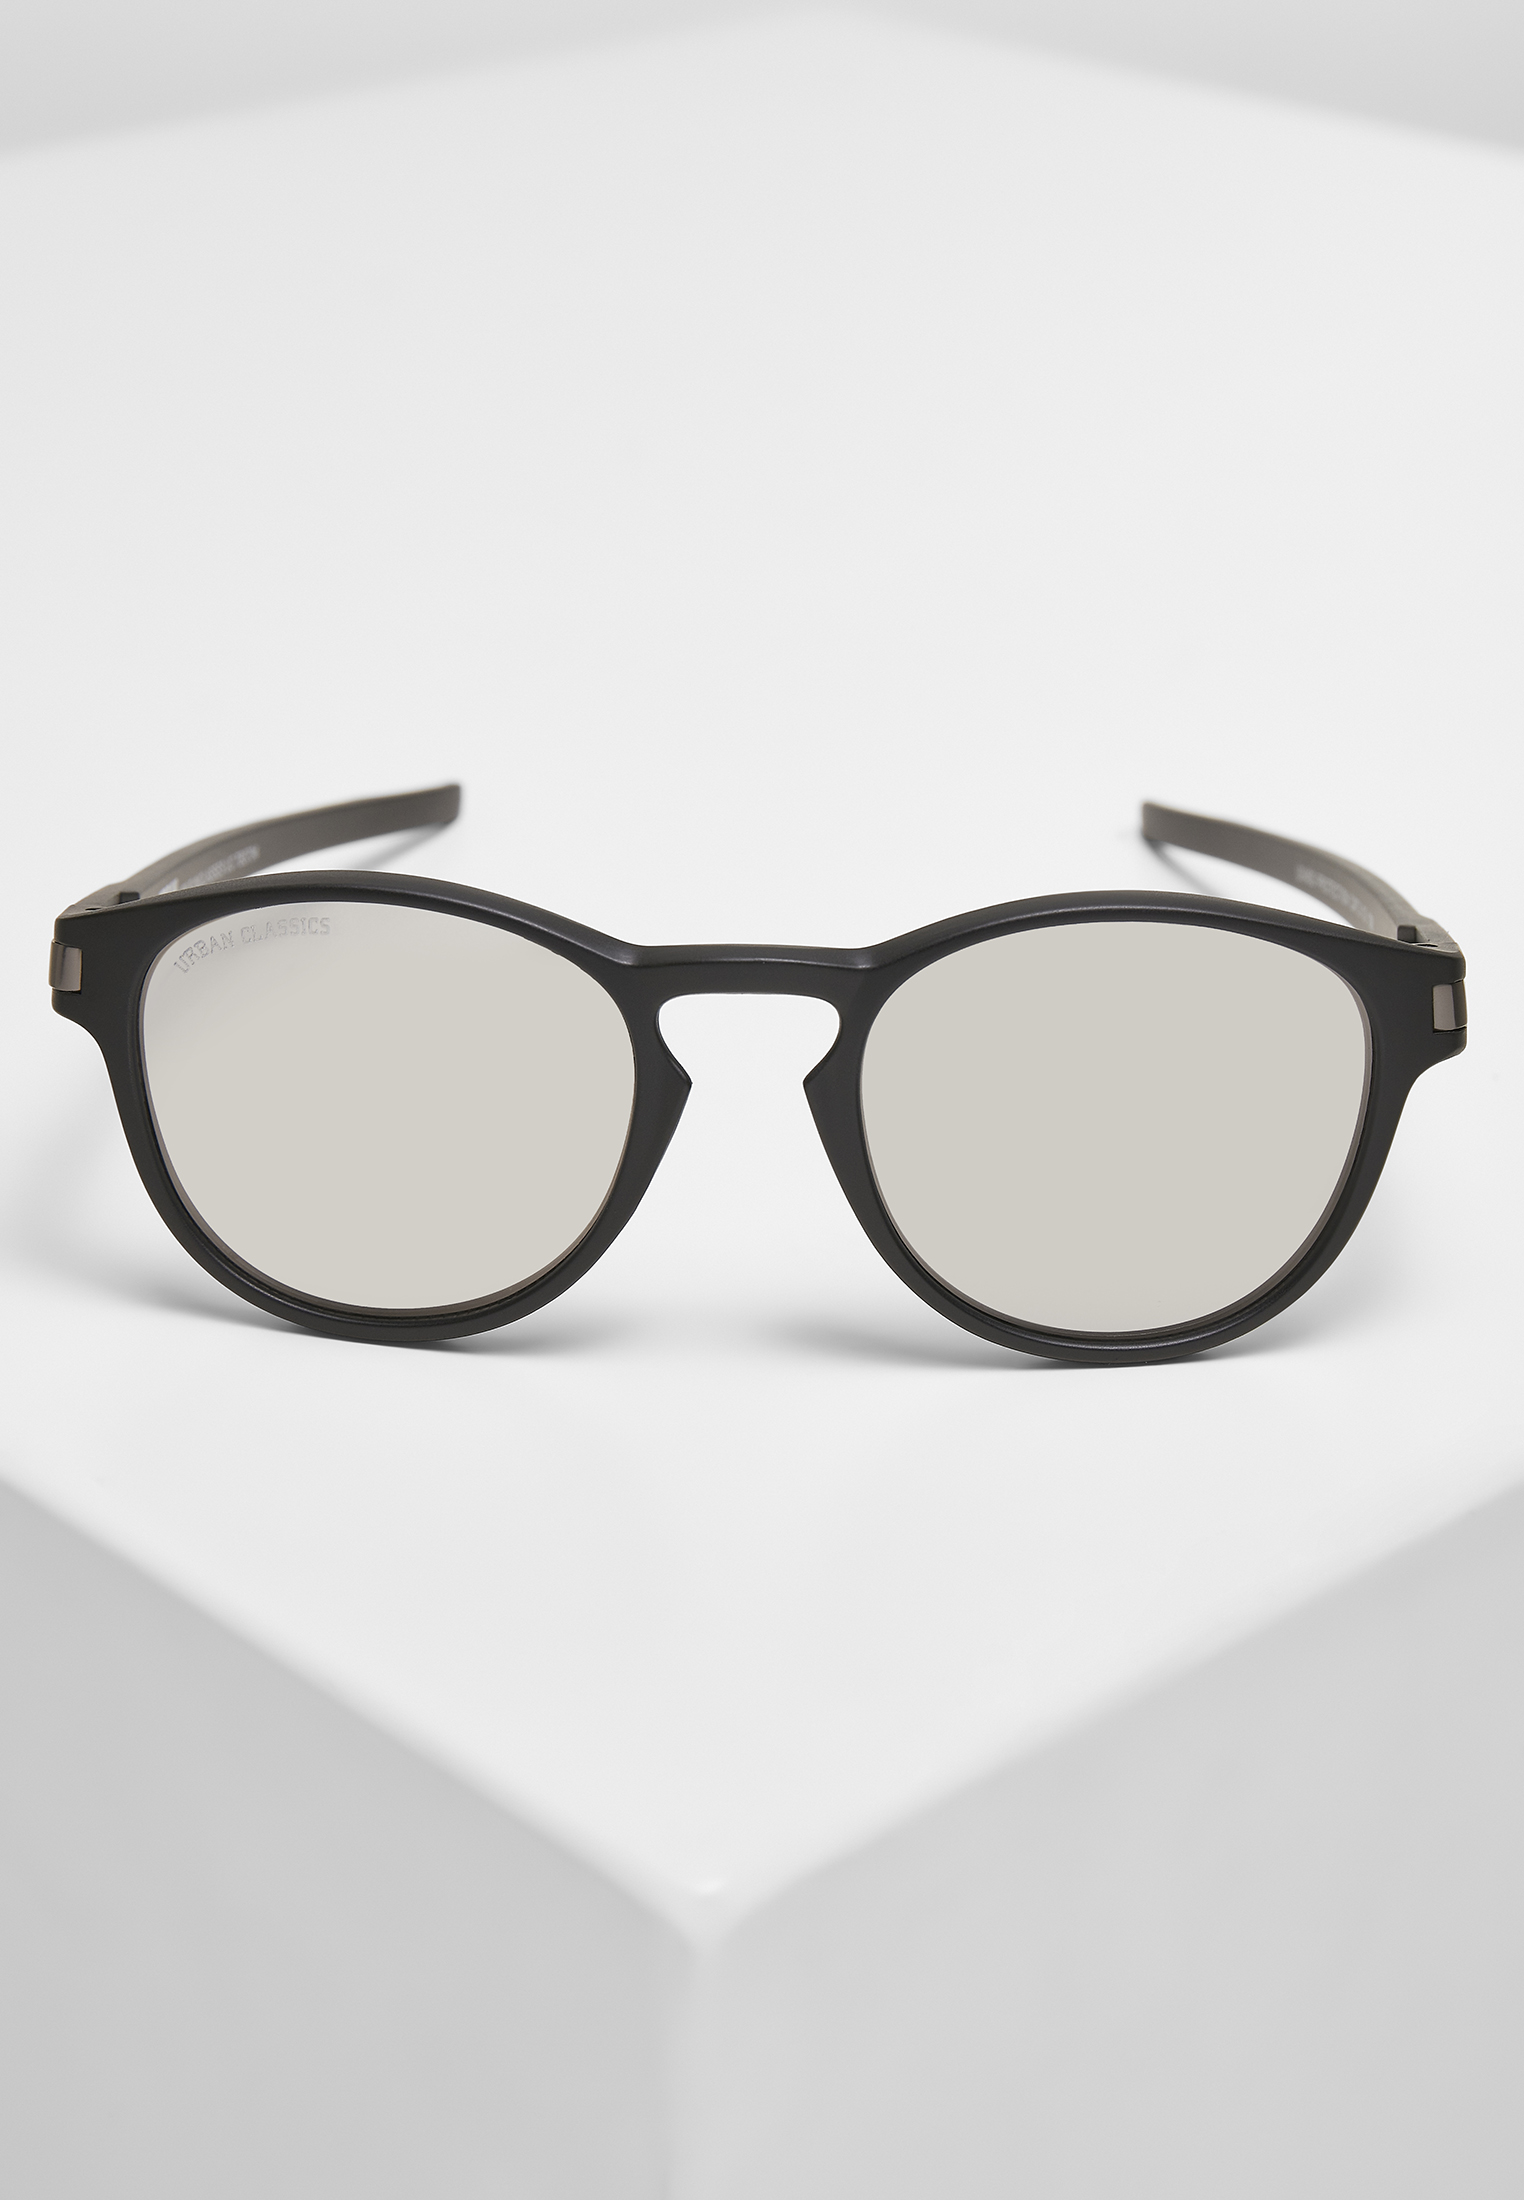 Sonnenbrillen 106 Sunglasses UC in Farbe black/silver